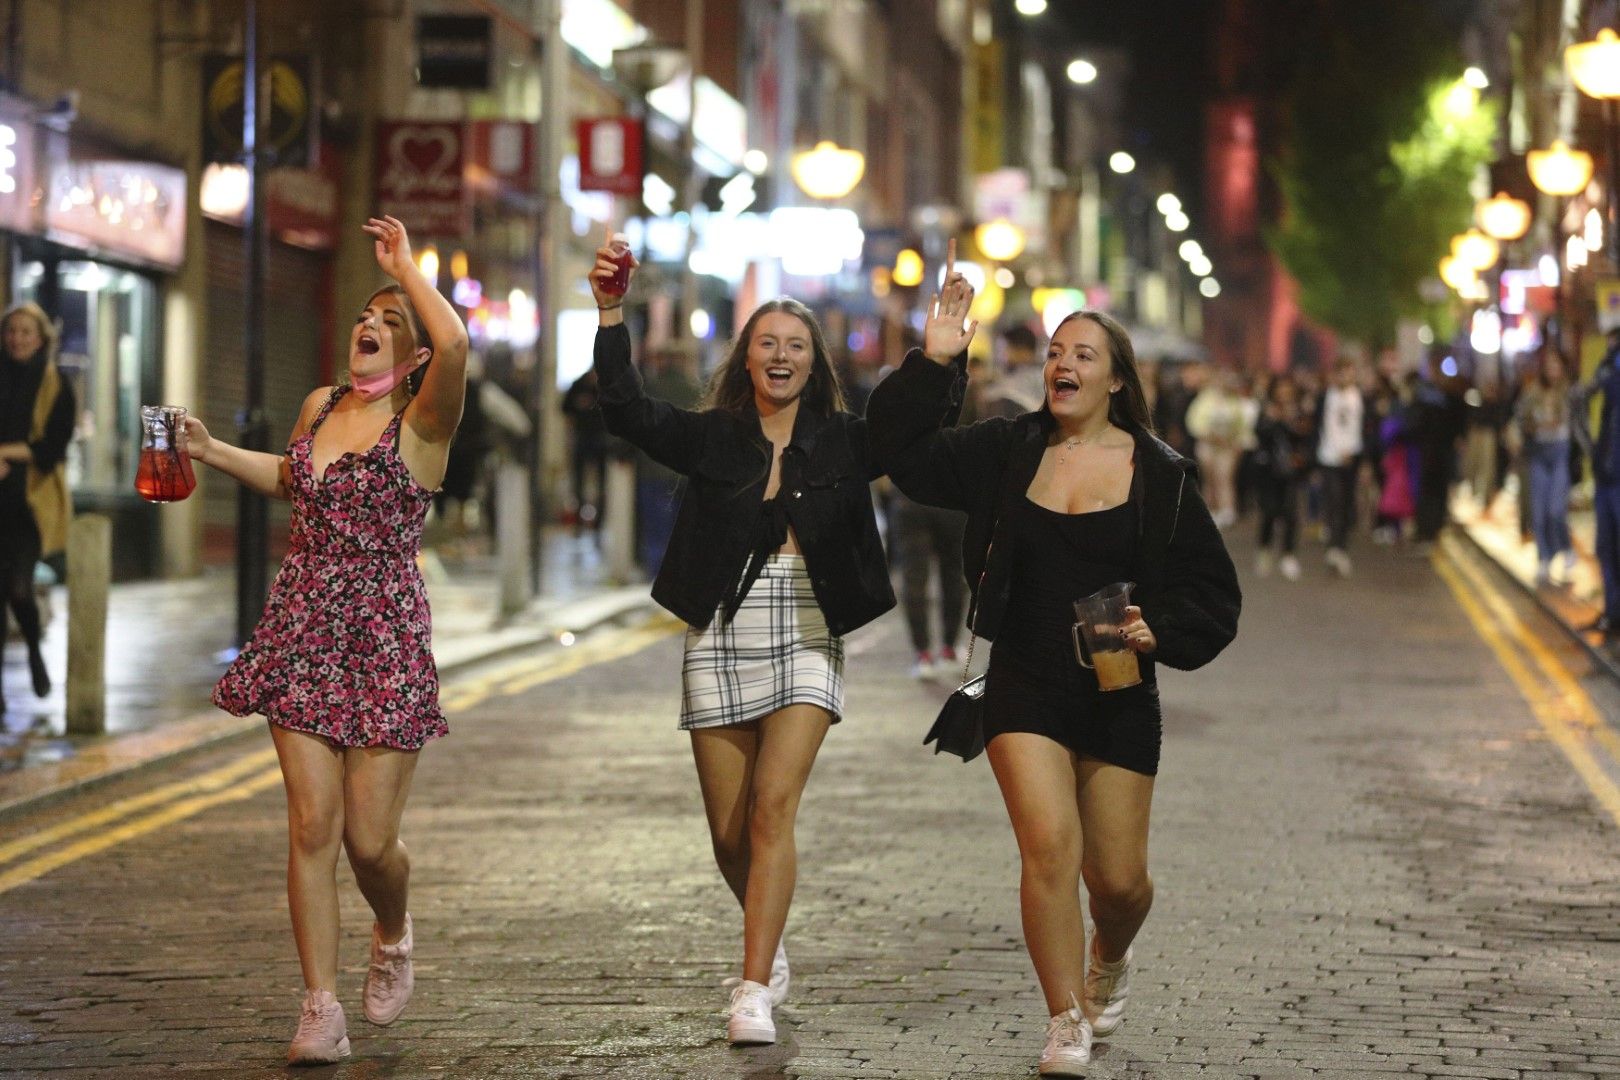 Веселие малко преди 22.00 часа по улица в Ливърпул, Англия, където баровете затварят в този час